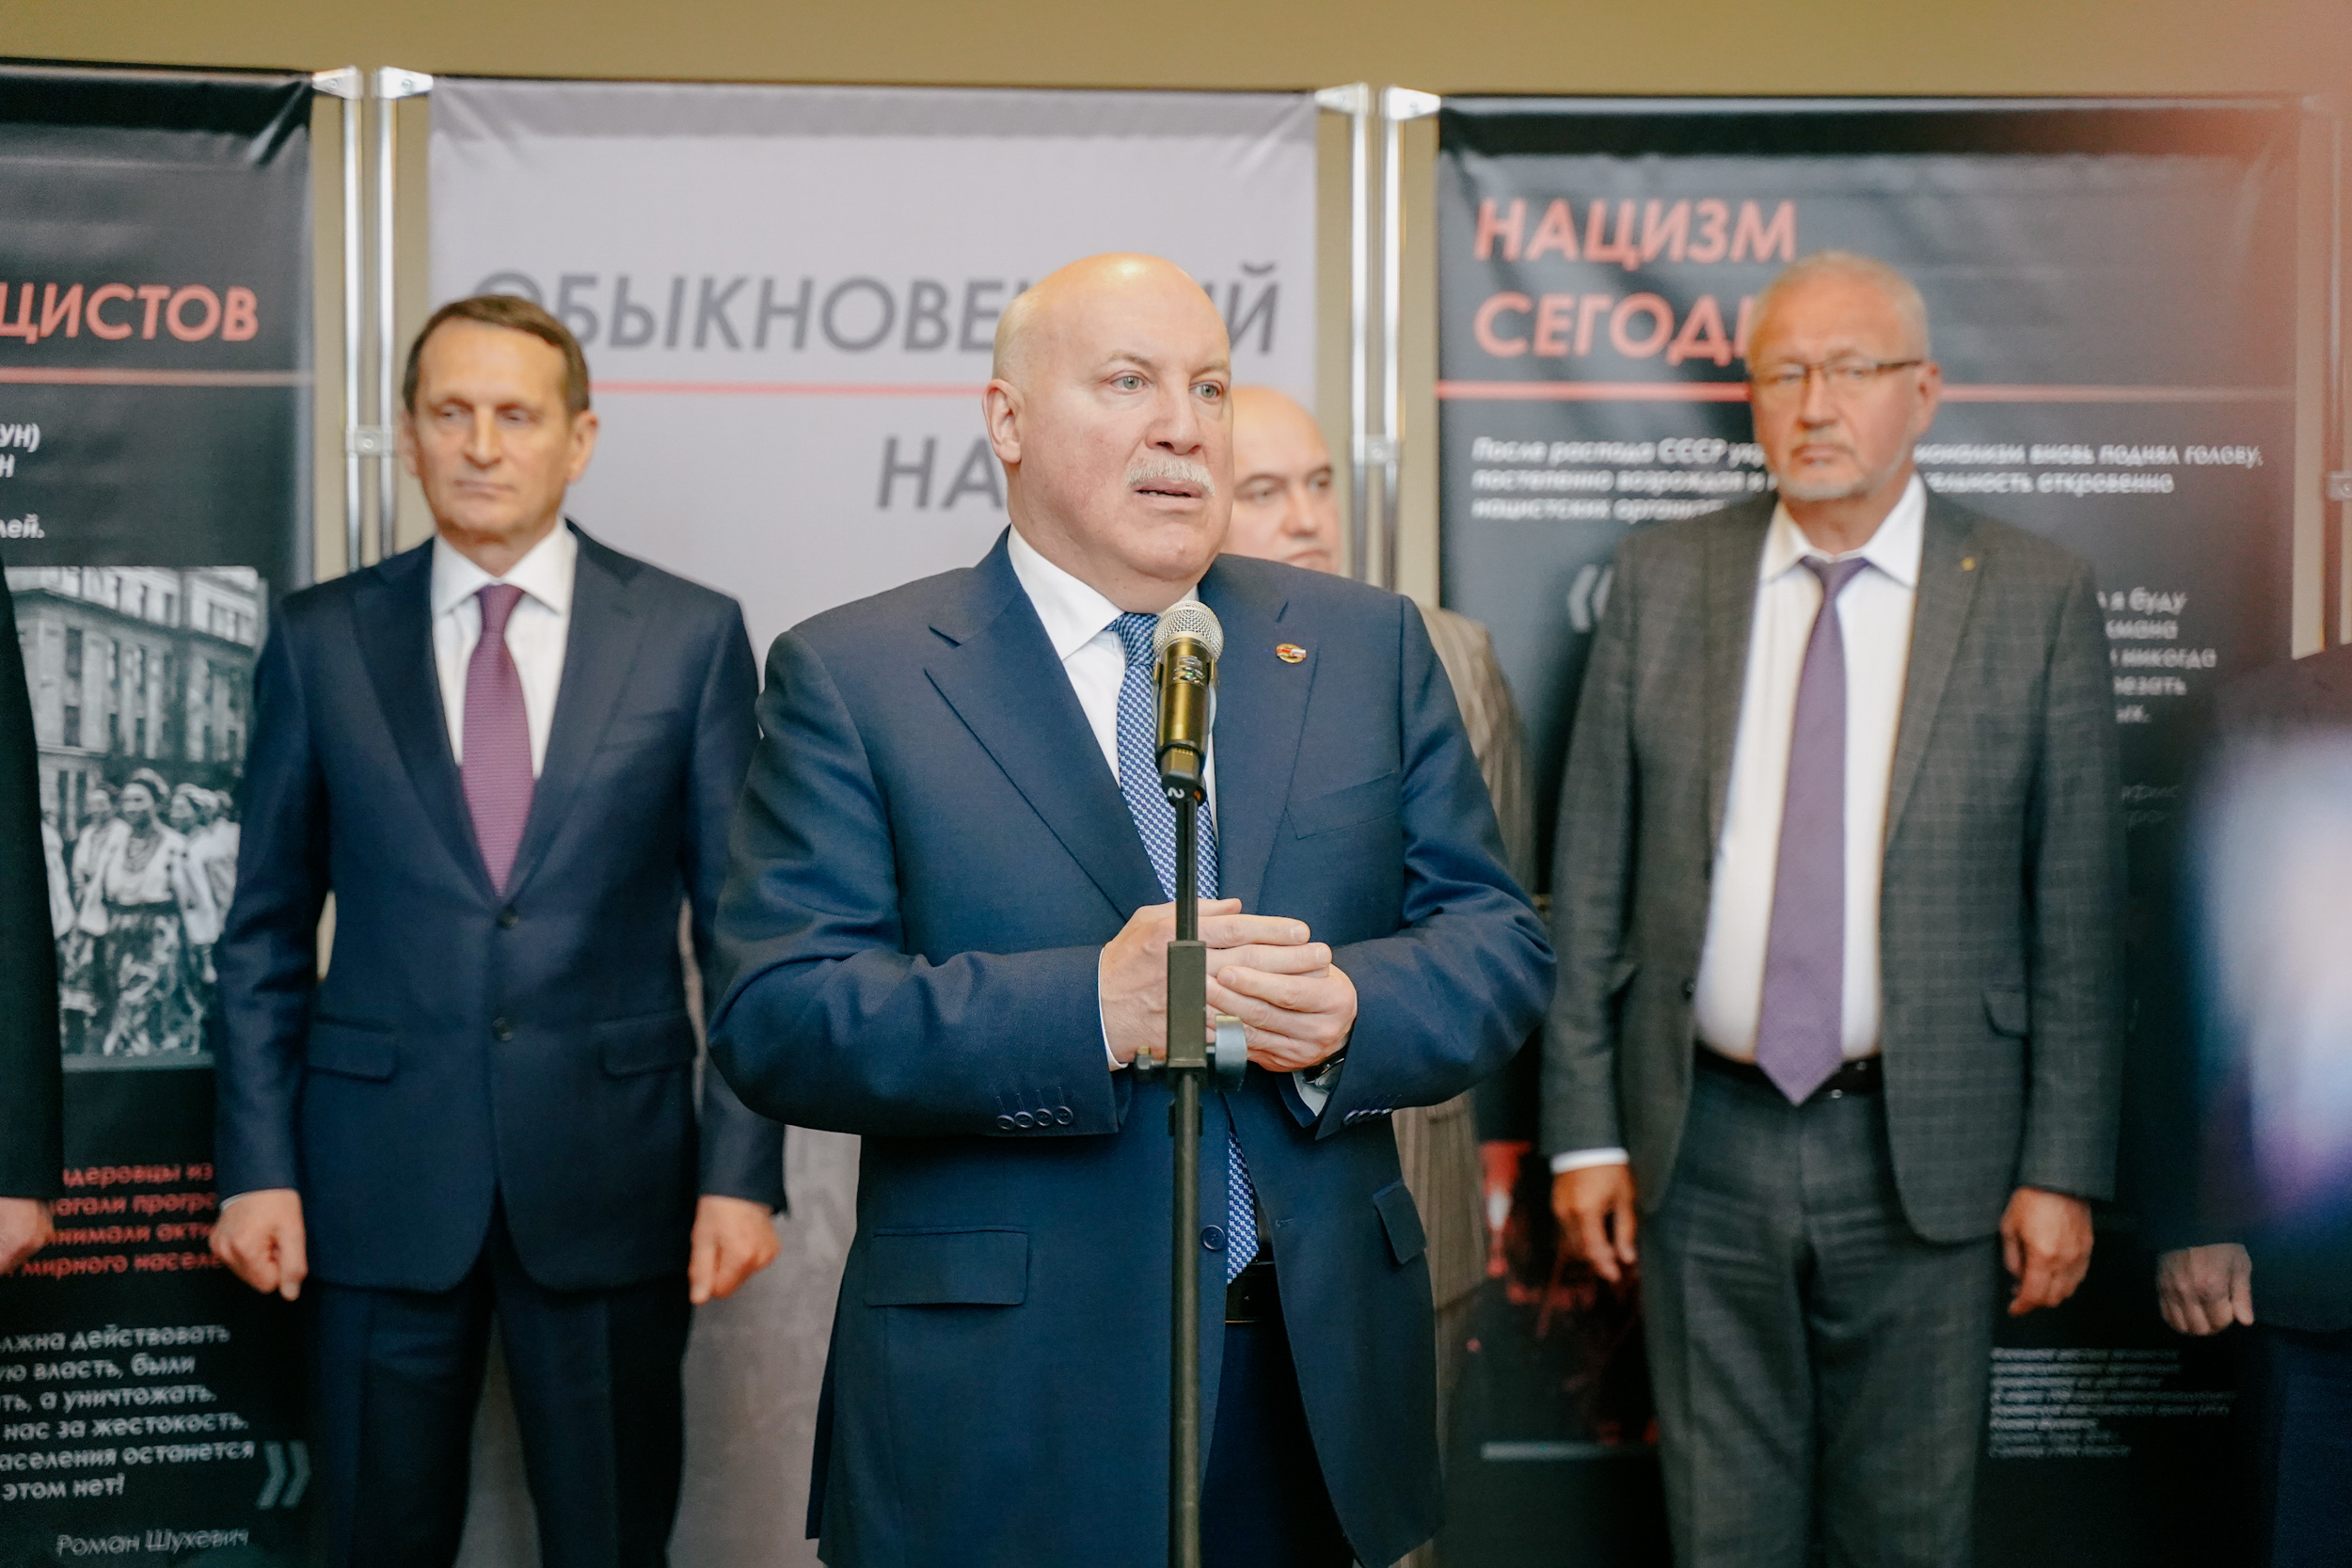 Председатель РИО Сергей Нарышкин открыл выставку «Обыкновенный нацизм» в Минске